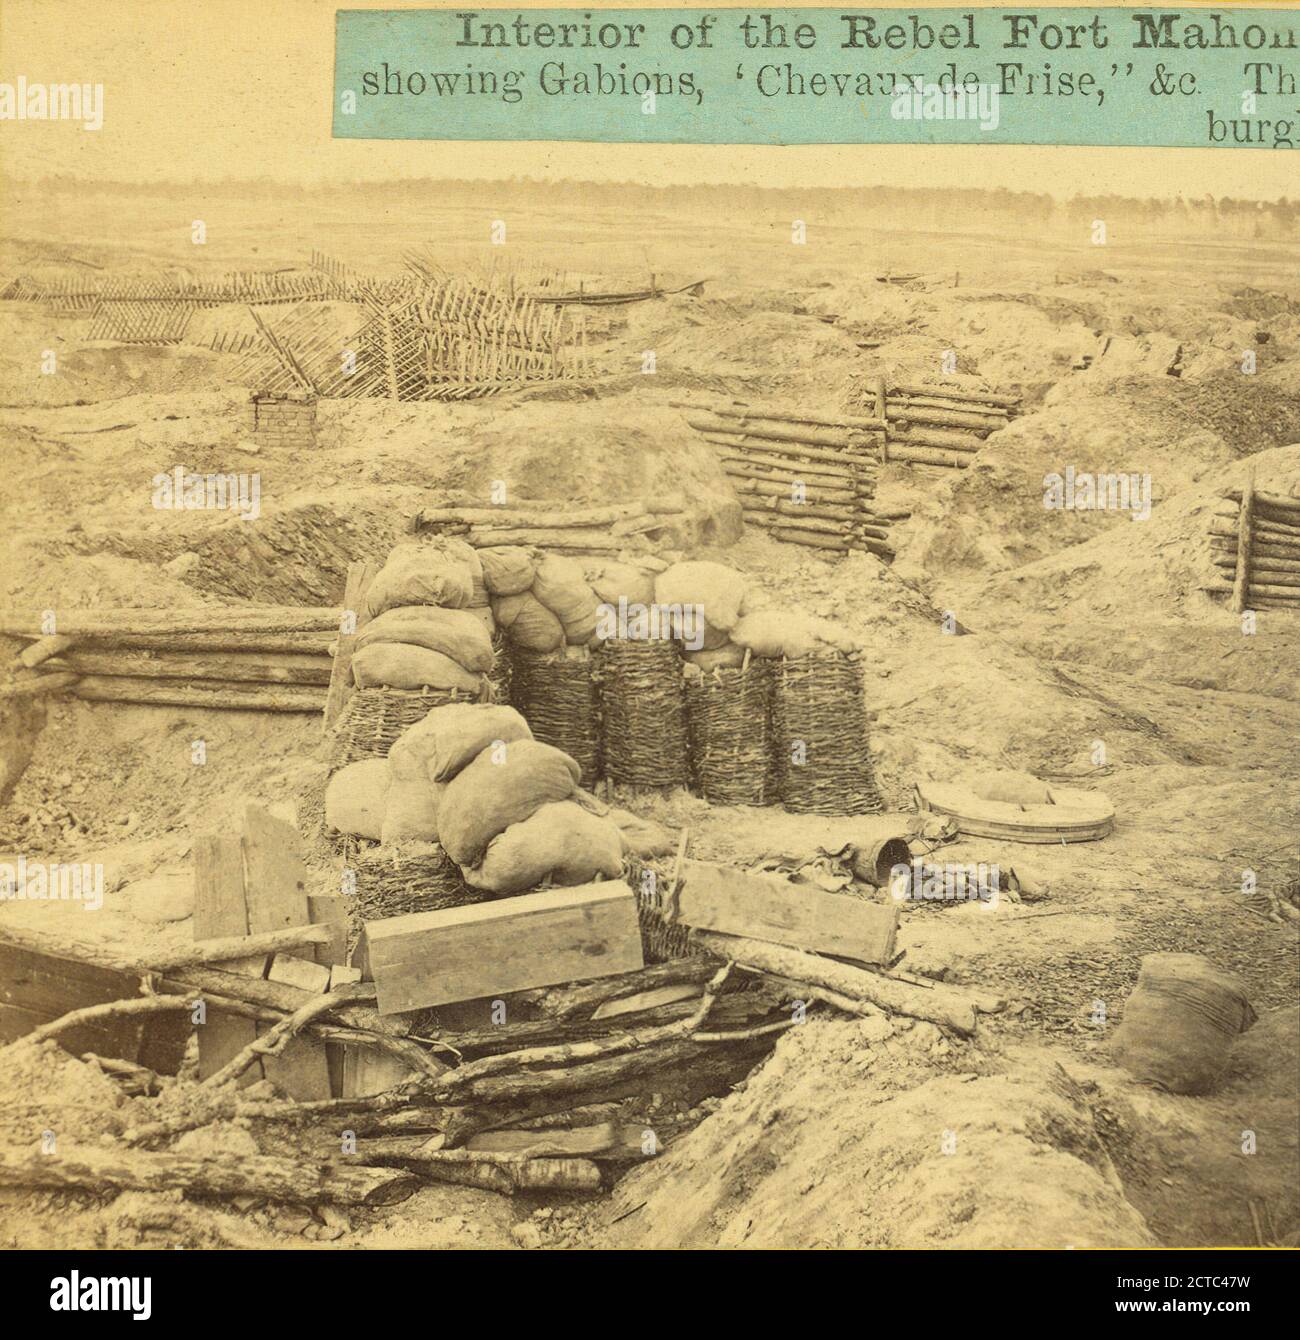 Interno del Rebel Fort Mahone, chiamato dai soldati 'Fort Damnation,'...., E. & H.T. Anthony (azienda), 1861, Stati Uniti Foto Stock